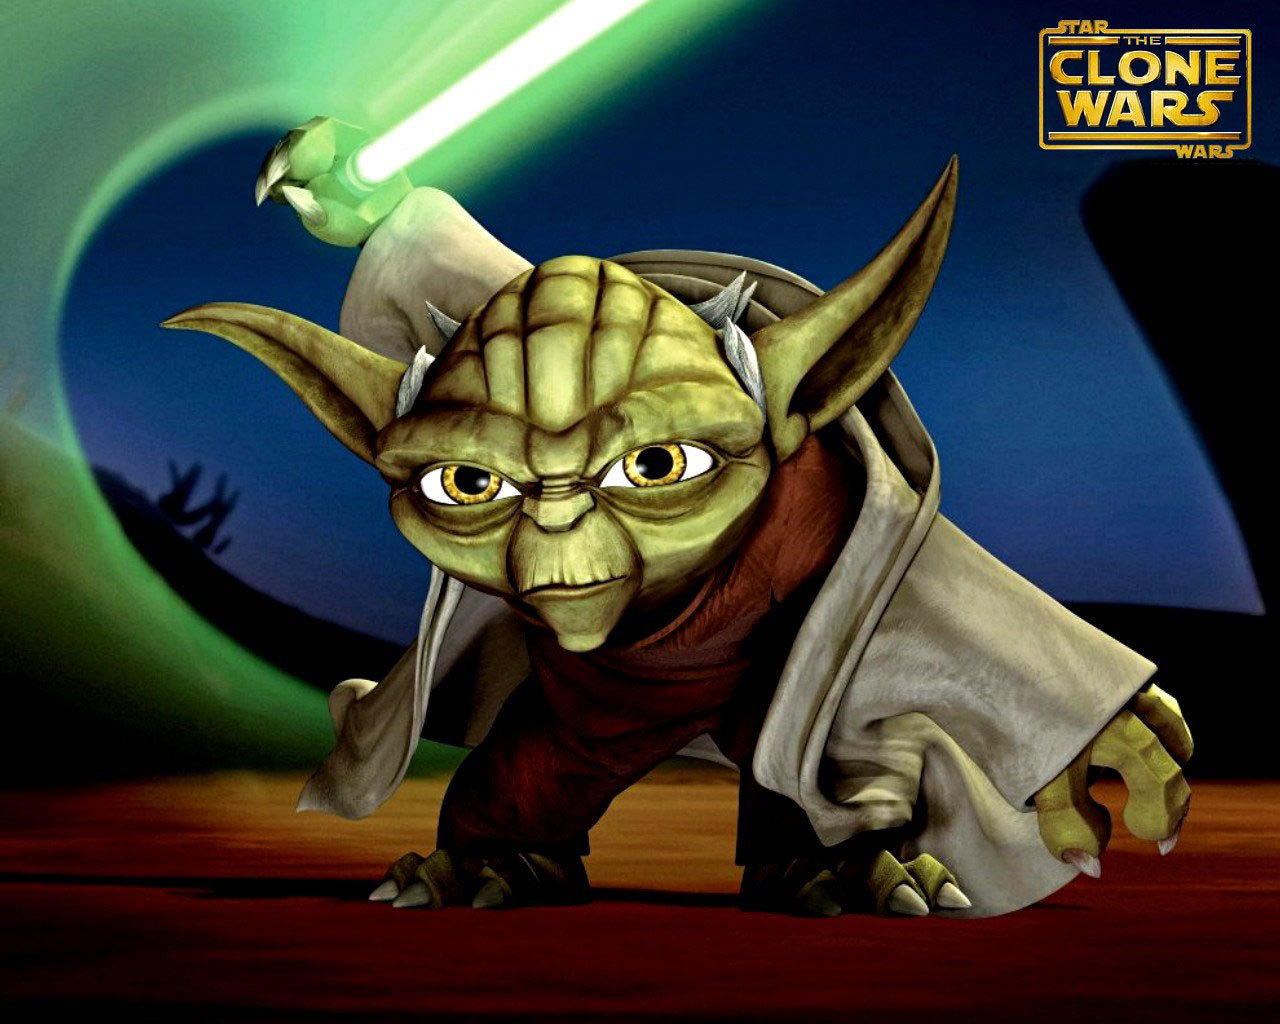 Clone Wars - Star Wars: Clone Wars Wallpaper (2951751) - Fanpop